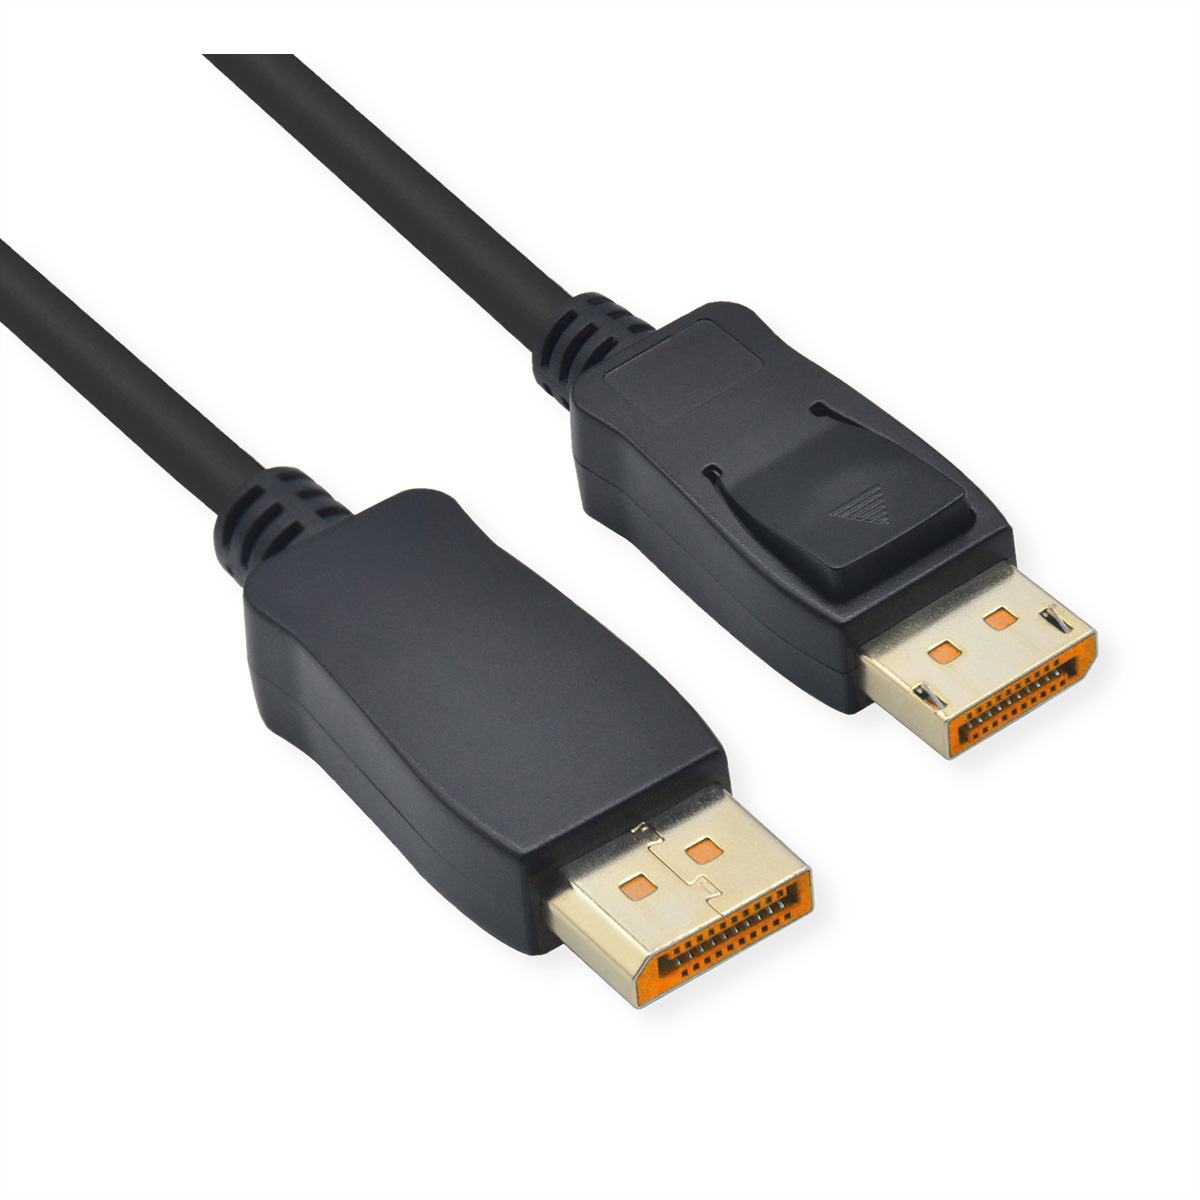 ST ST, ROLINE m 16K, DisplayPort DisplayPort-Kabel, v2.1, DP Kabel, 3 -